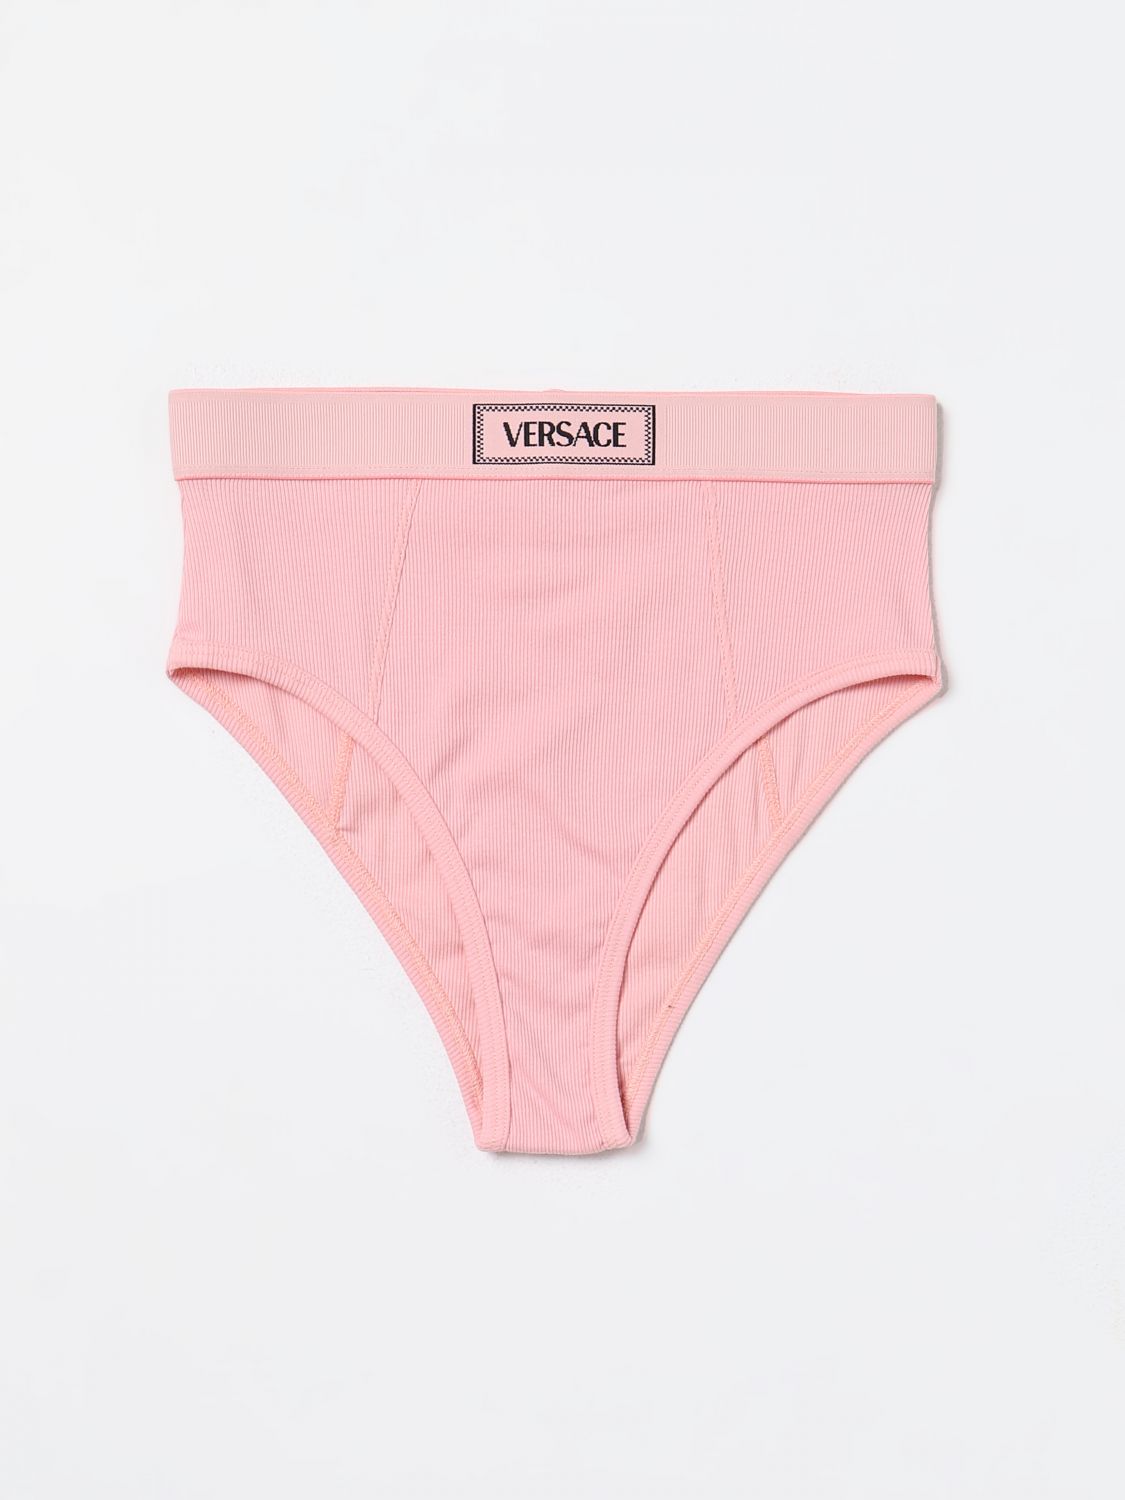 Versace Lingerie VERSACE Woman colour Pink